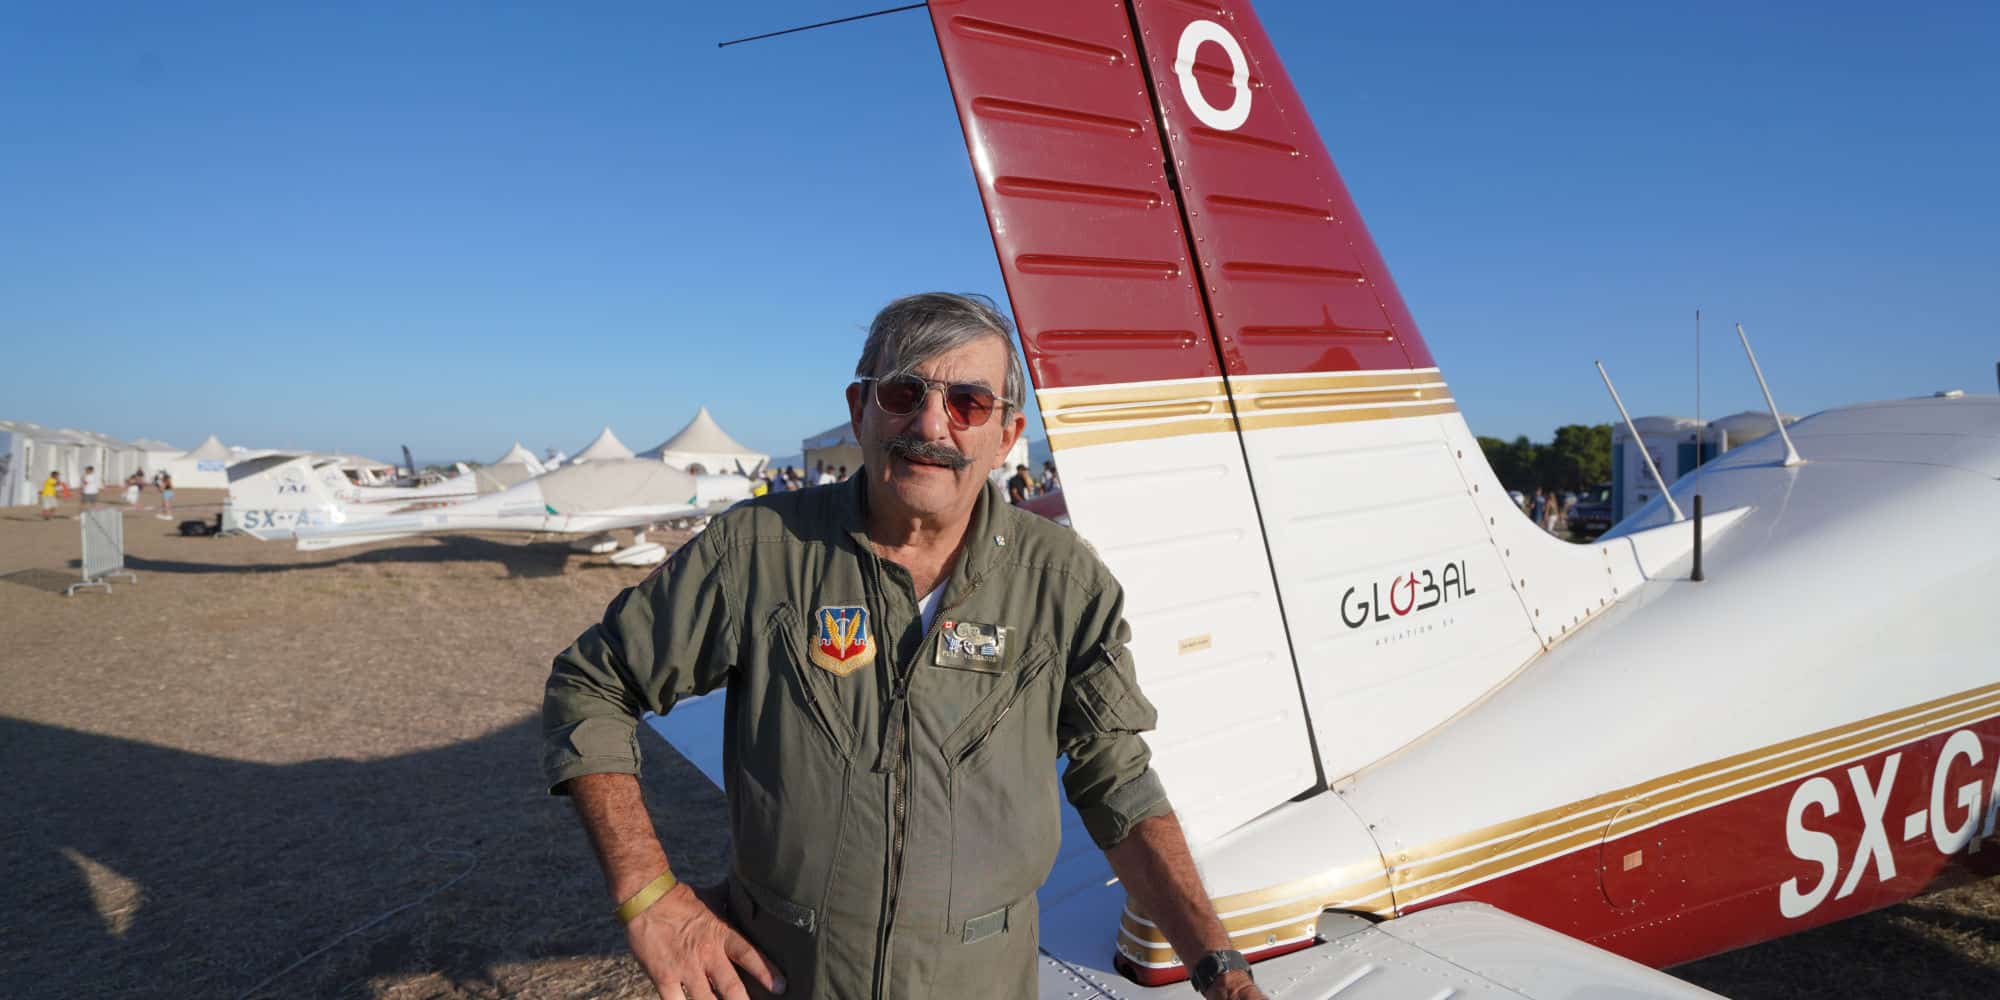 Ο ελληνικής καταγωγής πιλότος της Αμερικανικής Πολεμικής Αεροπορίας που πολέμησε στο Βιετνάμ